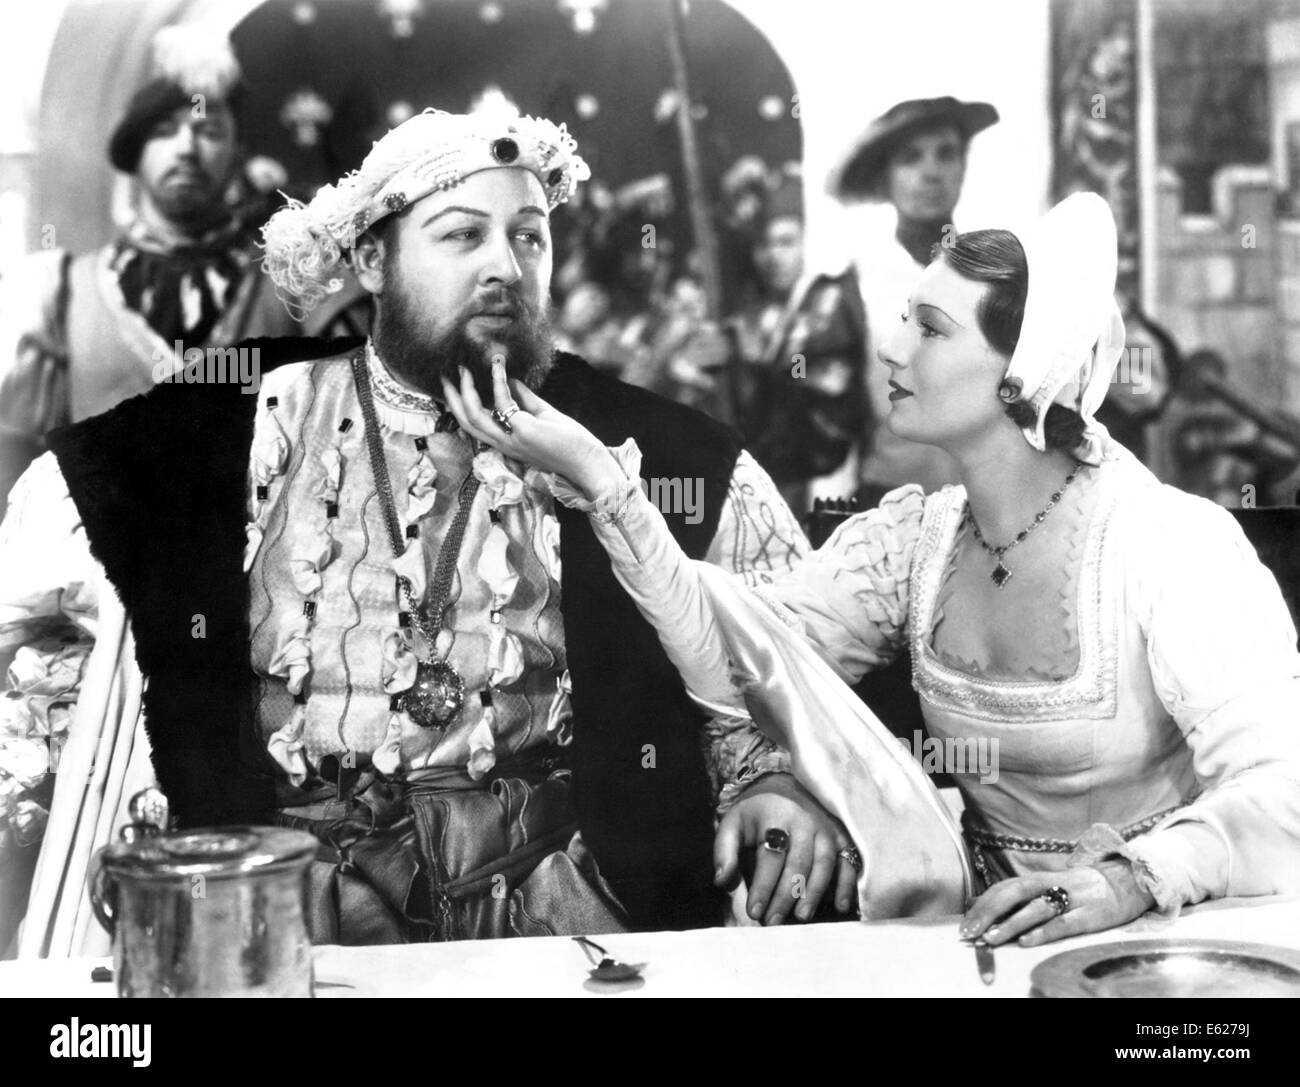 La vita privata di Henry VIII - con Charles Laughton - diretto da Alexander Korda - United Artists 1933 Foto Stock